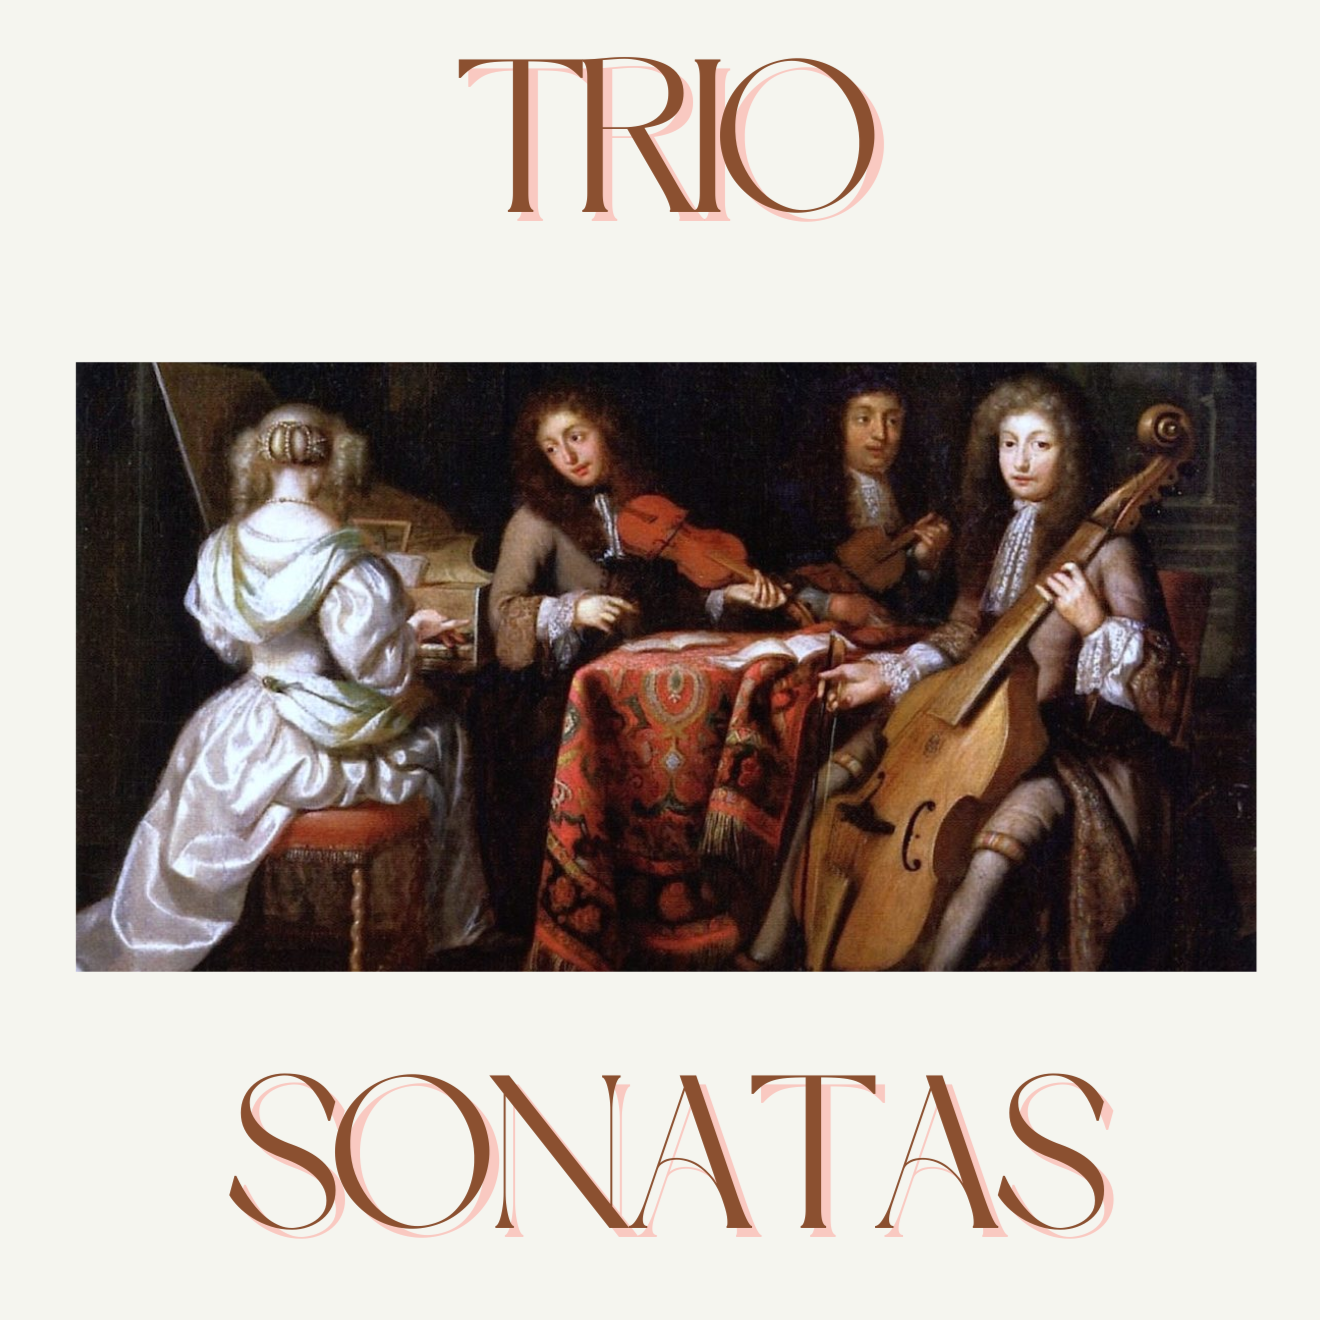 Five glorious Trio Sonatas to savour!